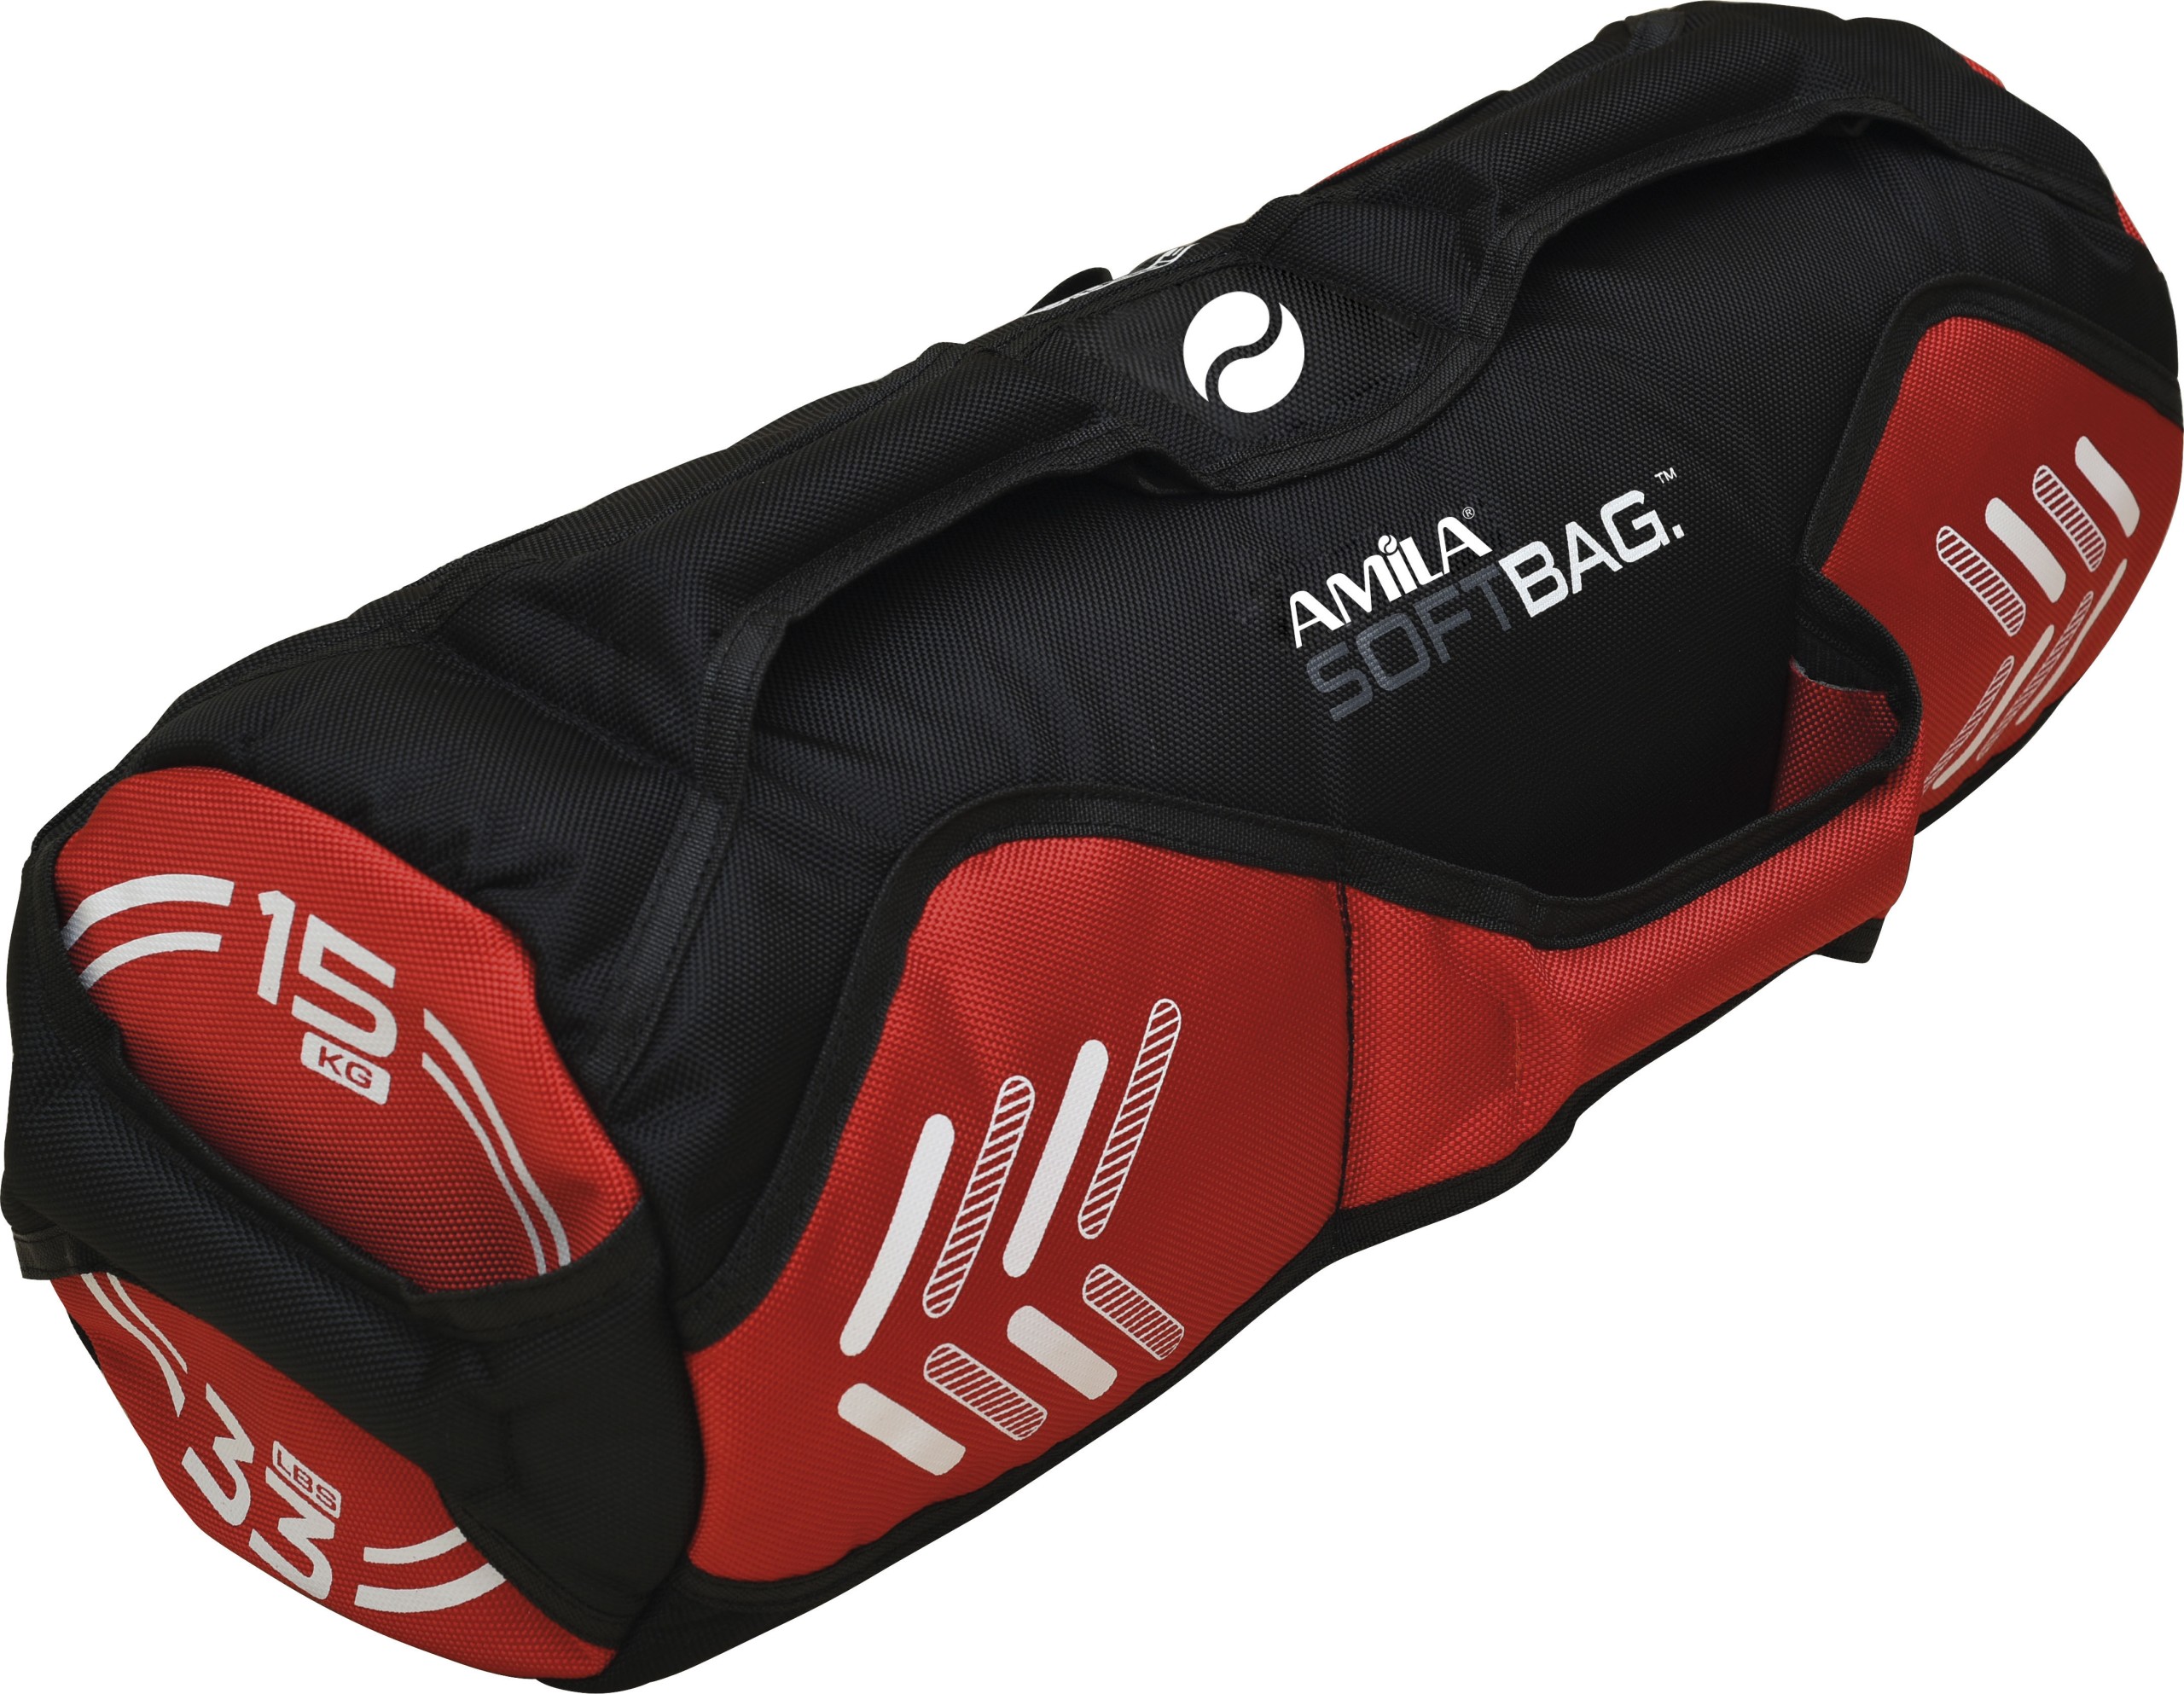 AMILA Soft Bag – 15kg